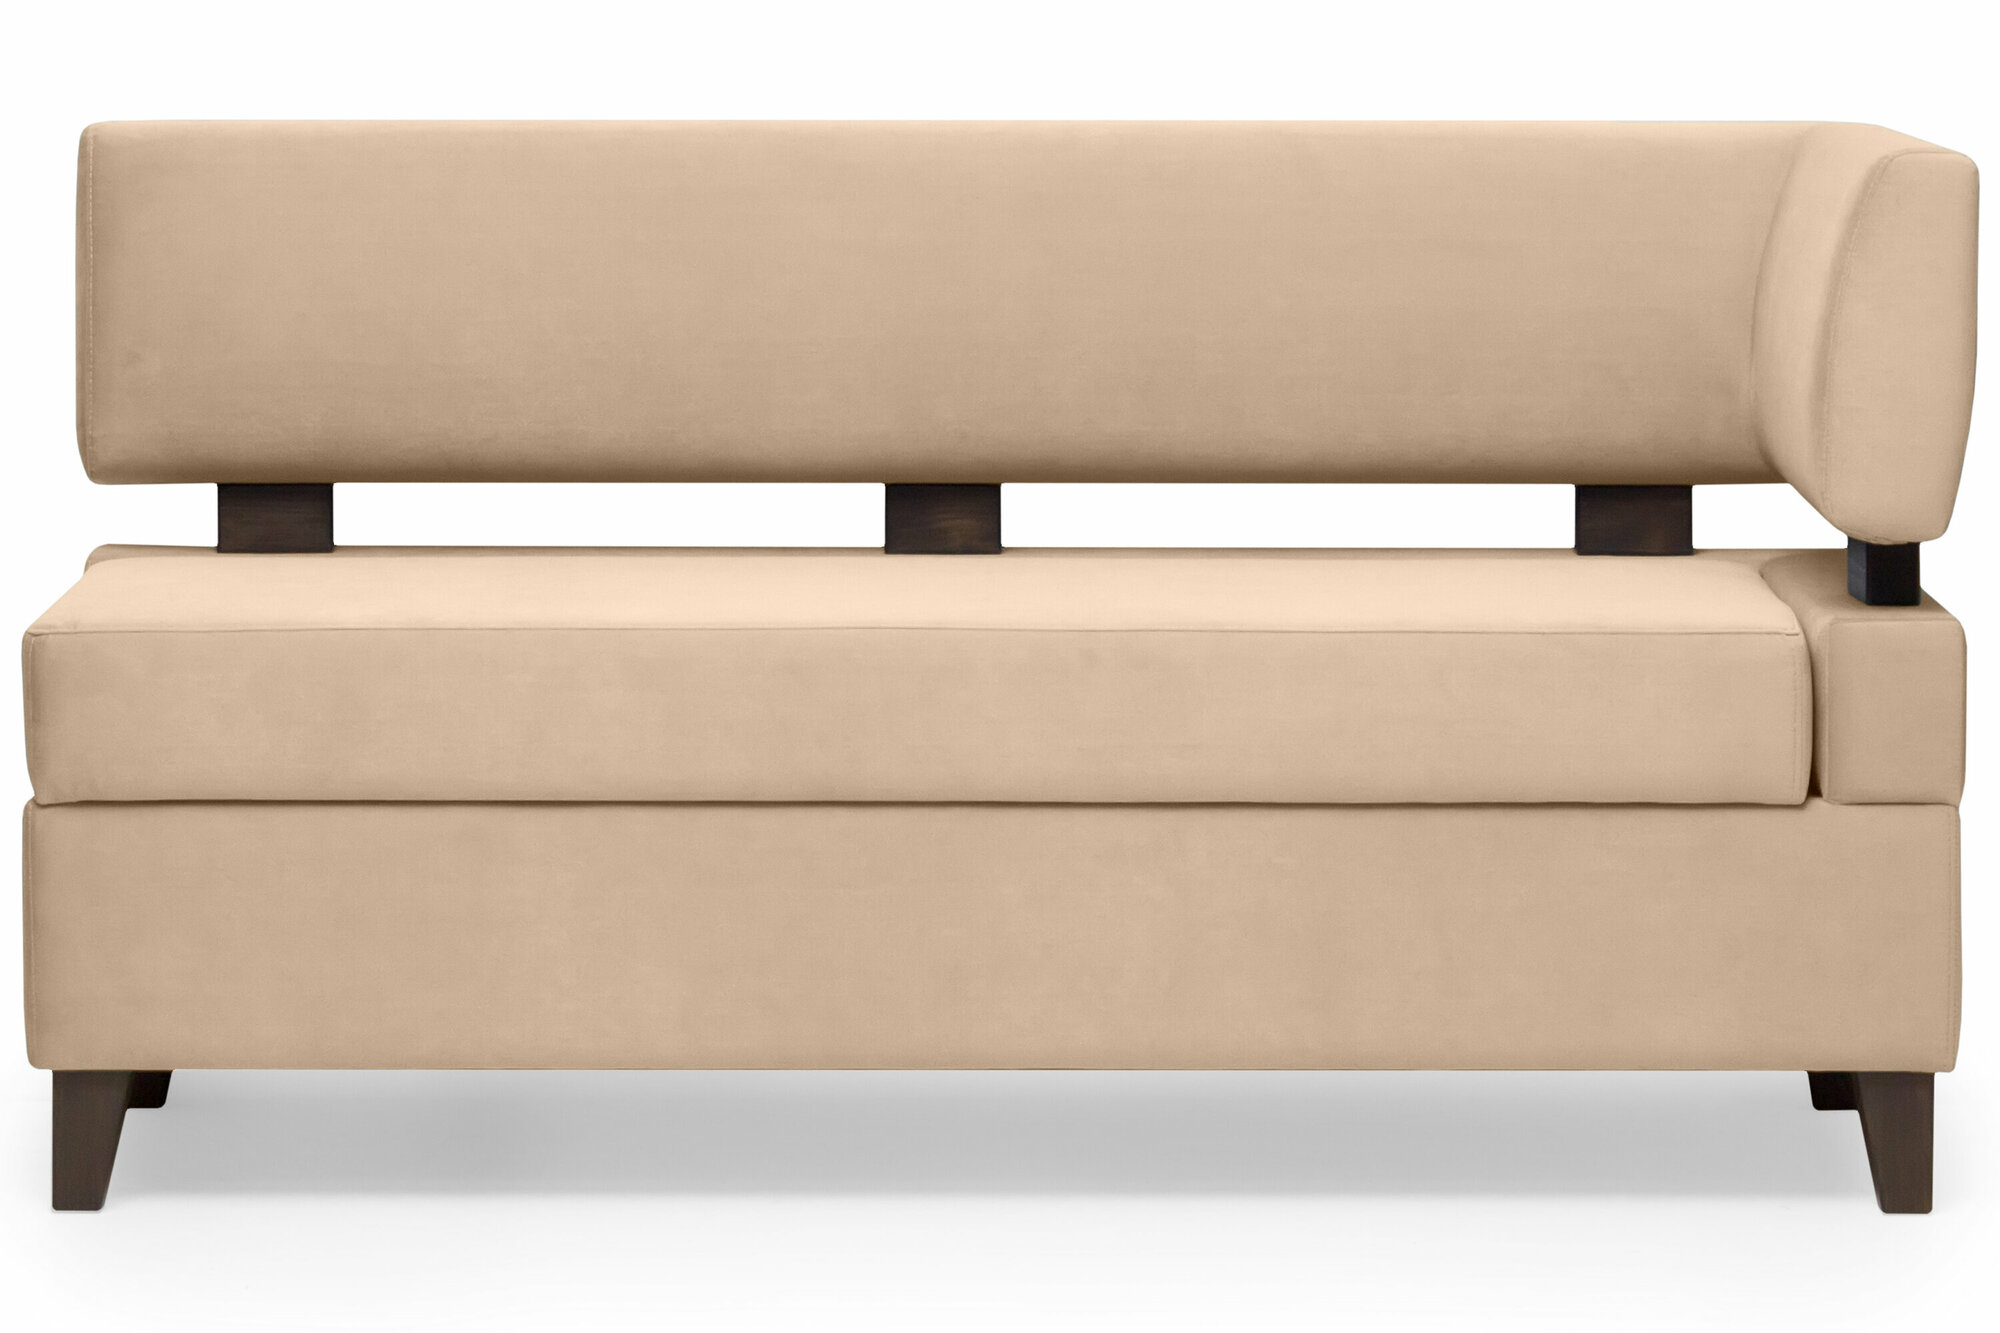 Прямой диван для кухни Свен 145 см с боковой спинкой и ящиком - бежевый, правый